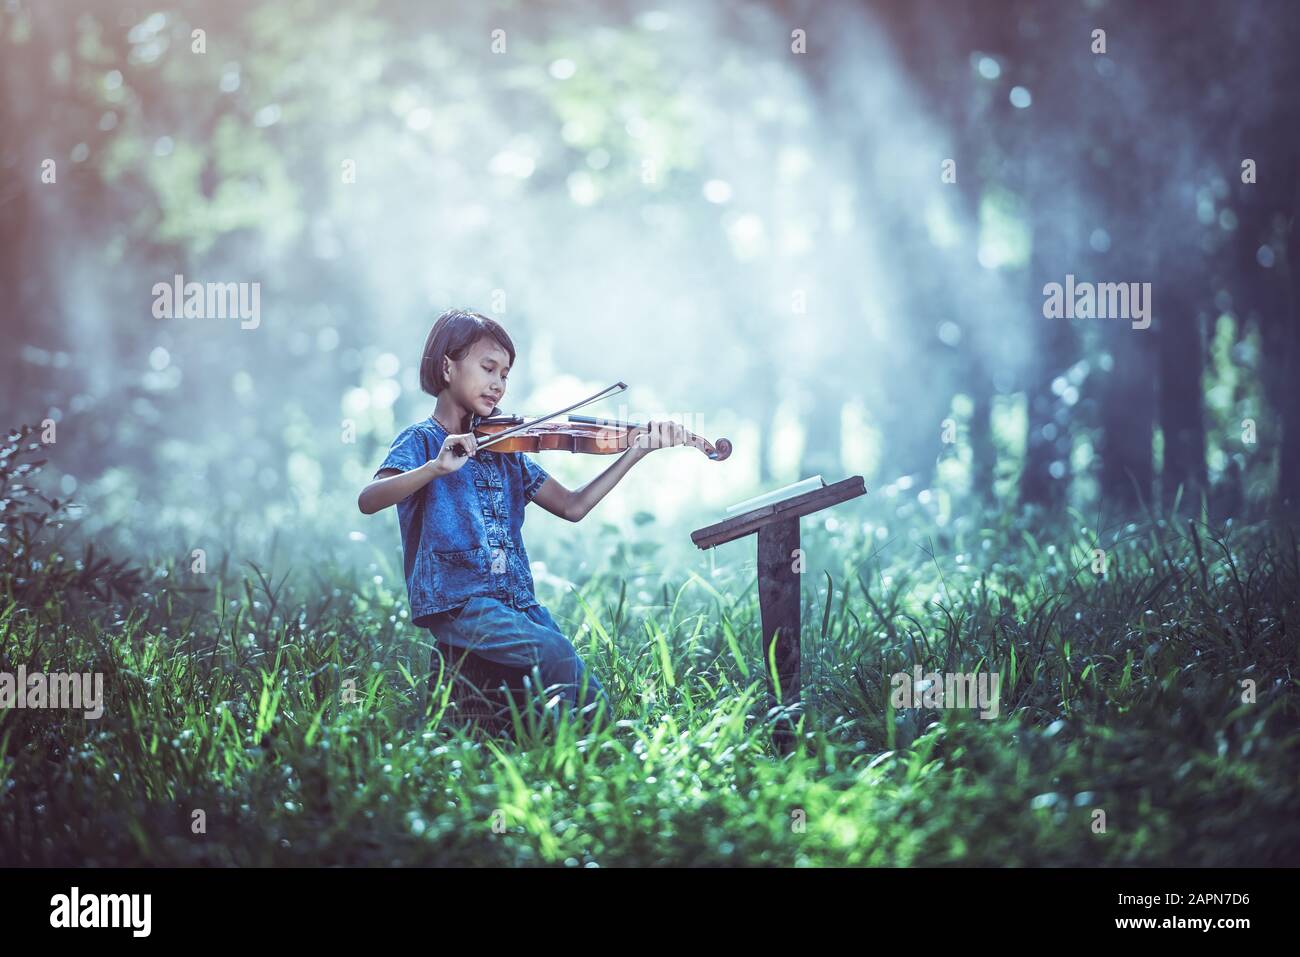 La comédie musicale : petit enfant asiatique jouant au violon à l'extérieur Banque D'Images